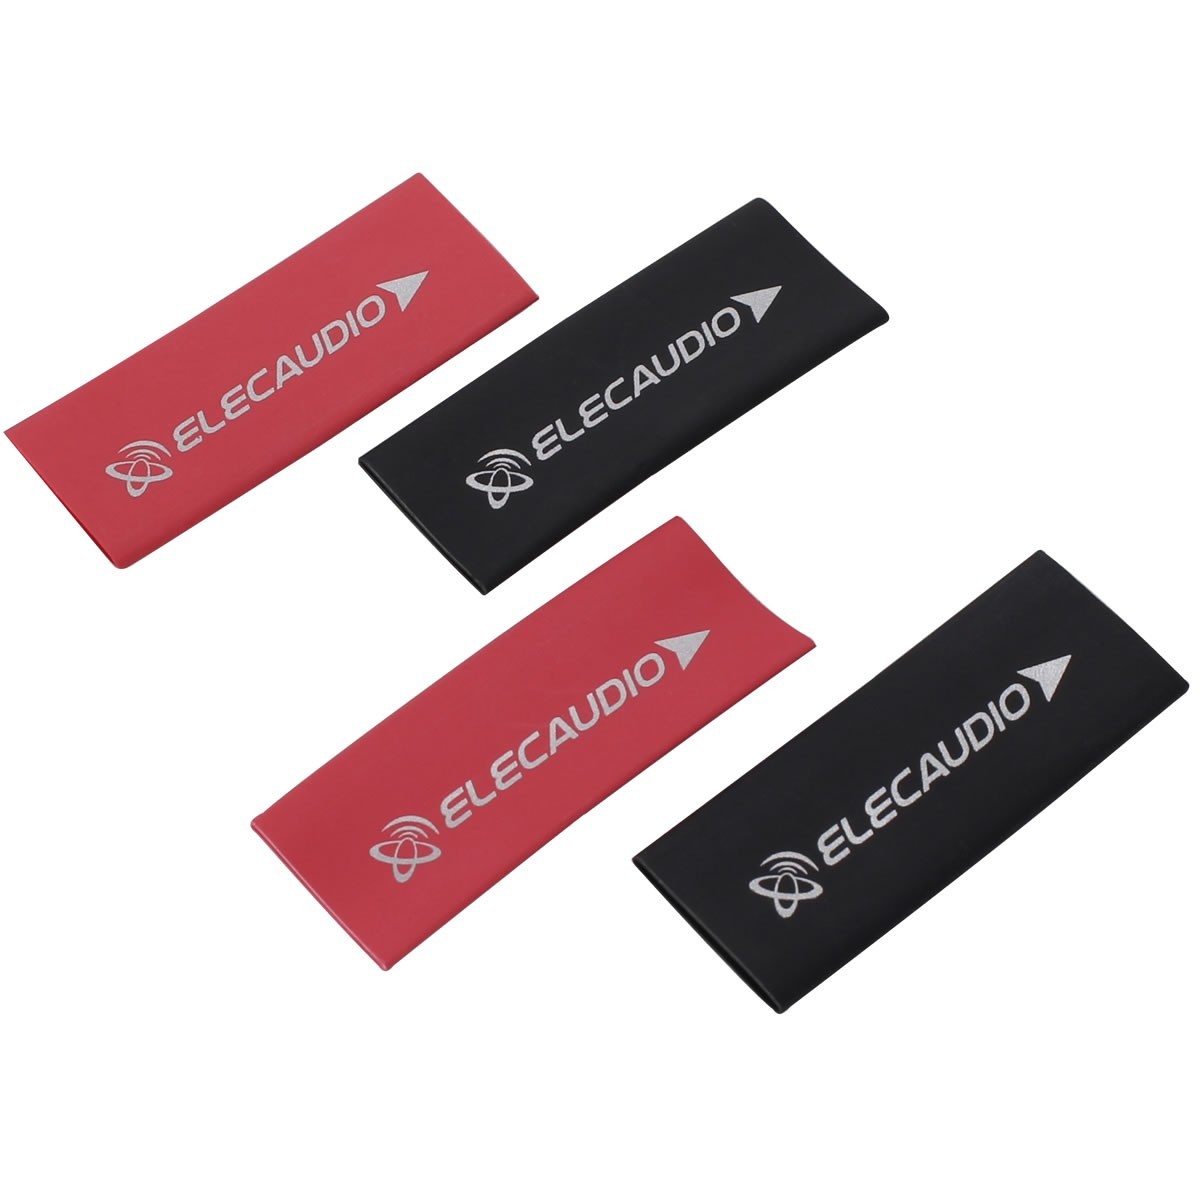 ELECAUDIO Gaines Thermo Rétractables 3:1 Ø12mm Pour Câbles 20x50mm Noir et Rouge (Set x4)